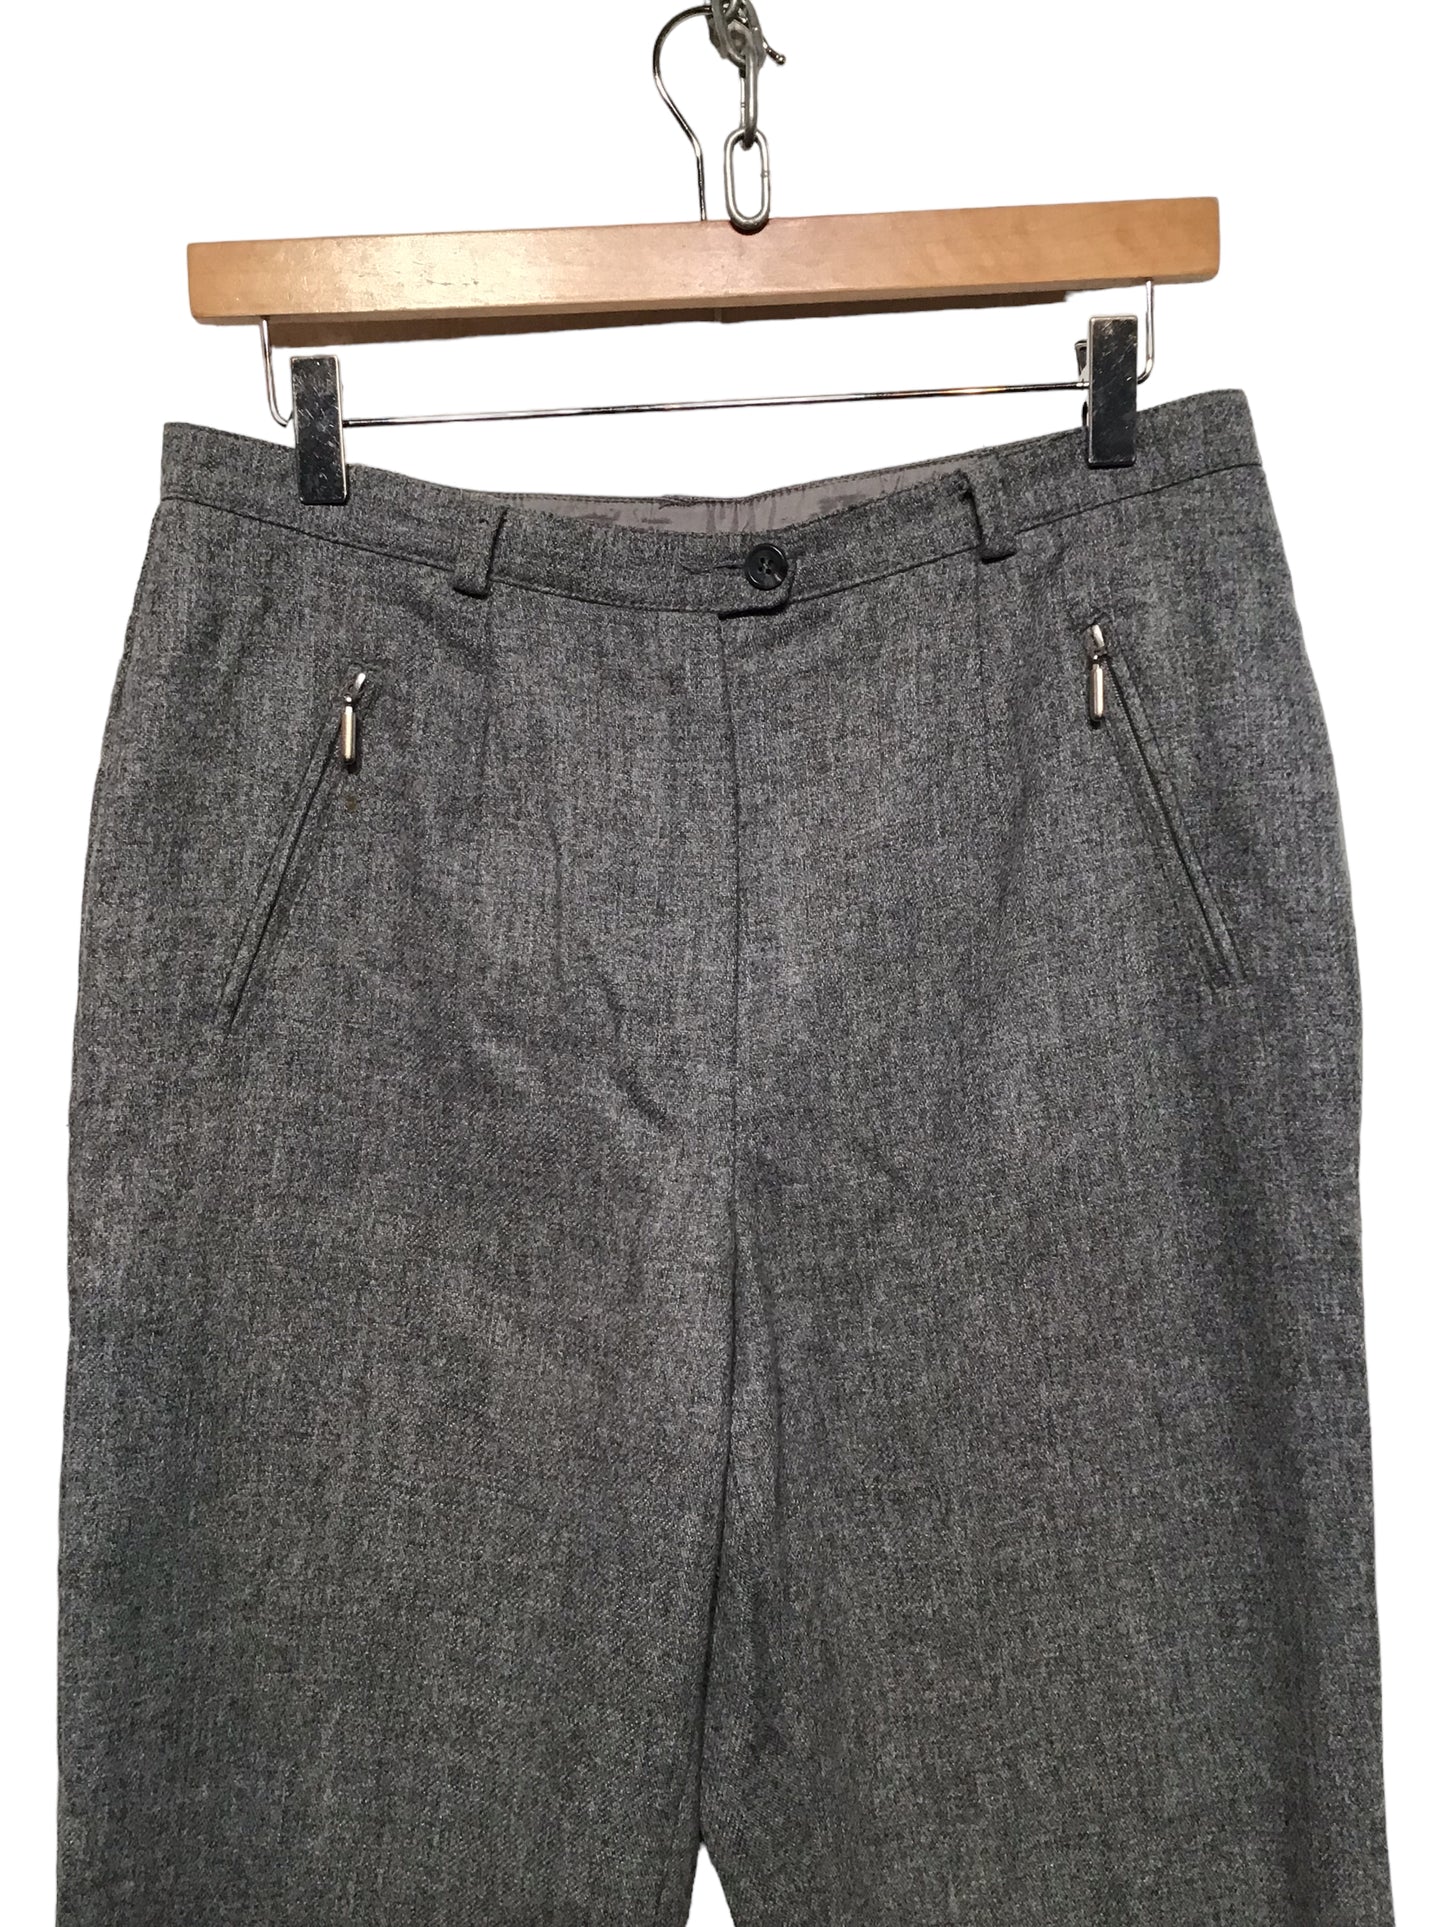 M&S Woollen Trousers (Size L)